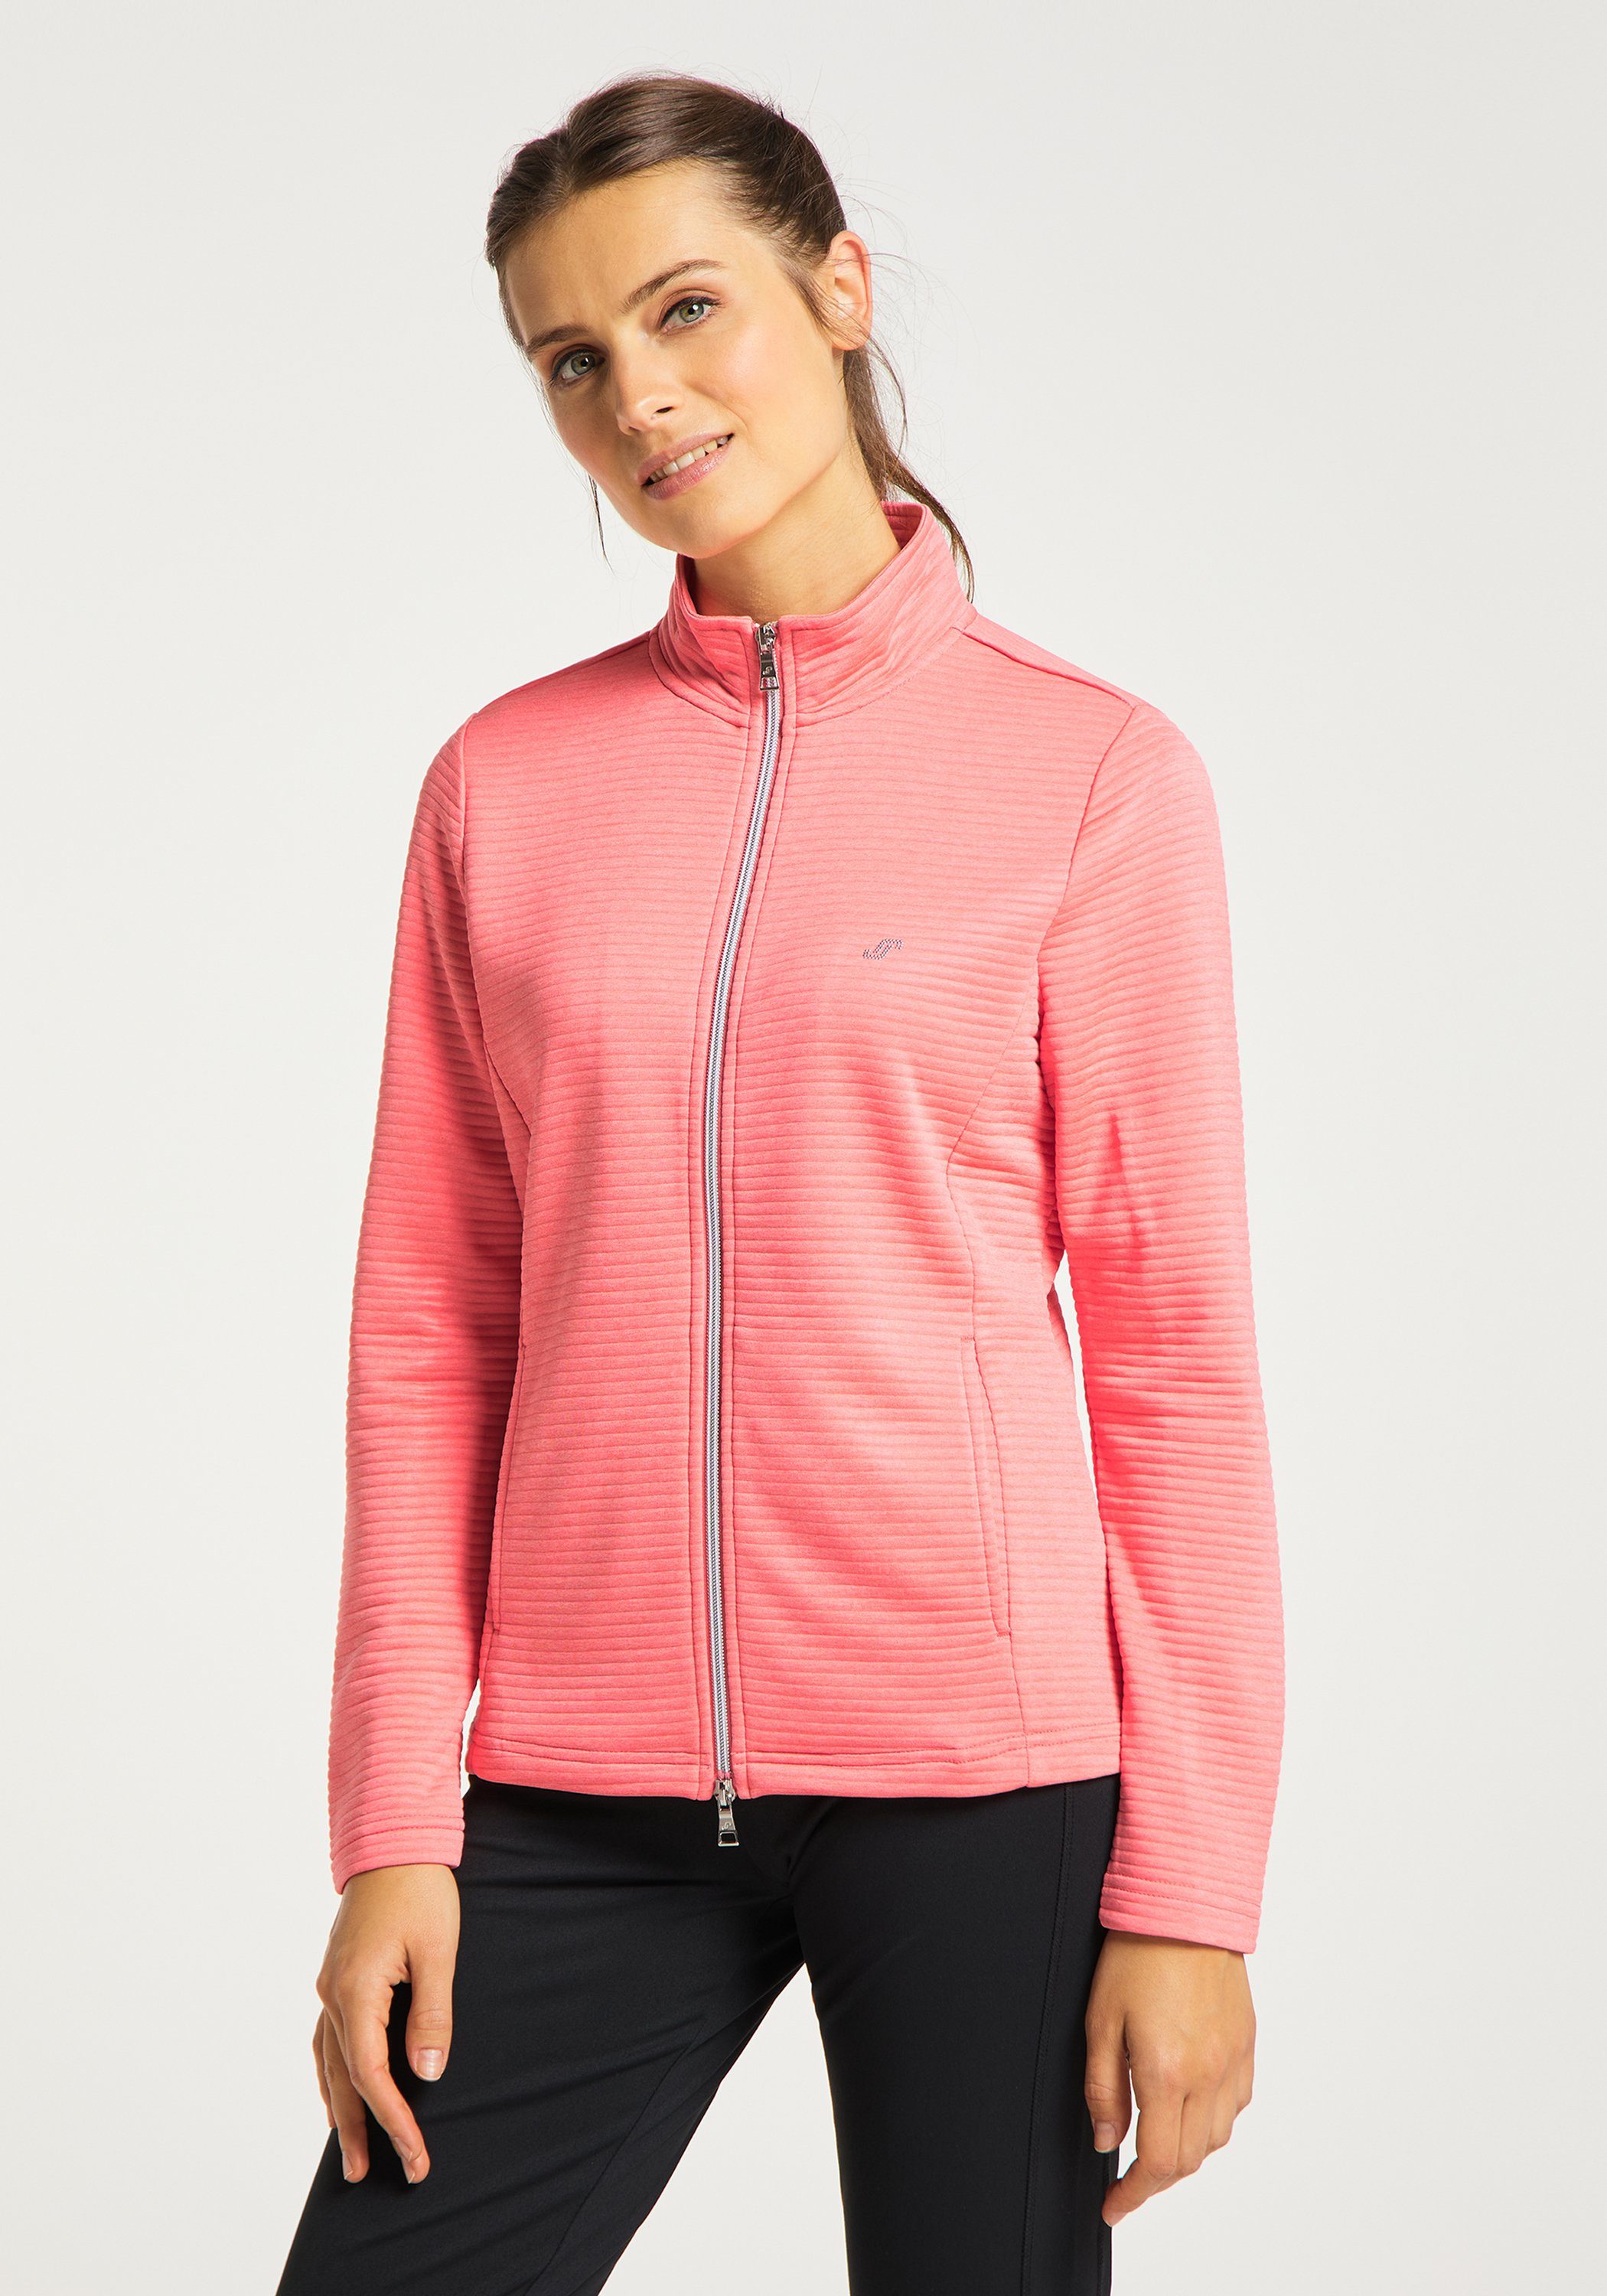 Joy Sportswear Trainingsjacke Jacke pink PEGGY coral melange